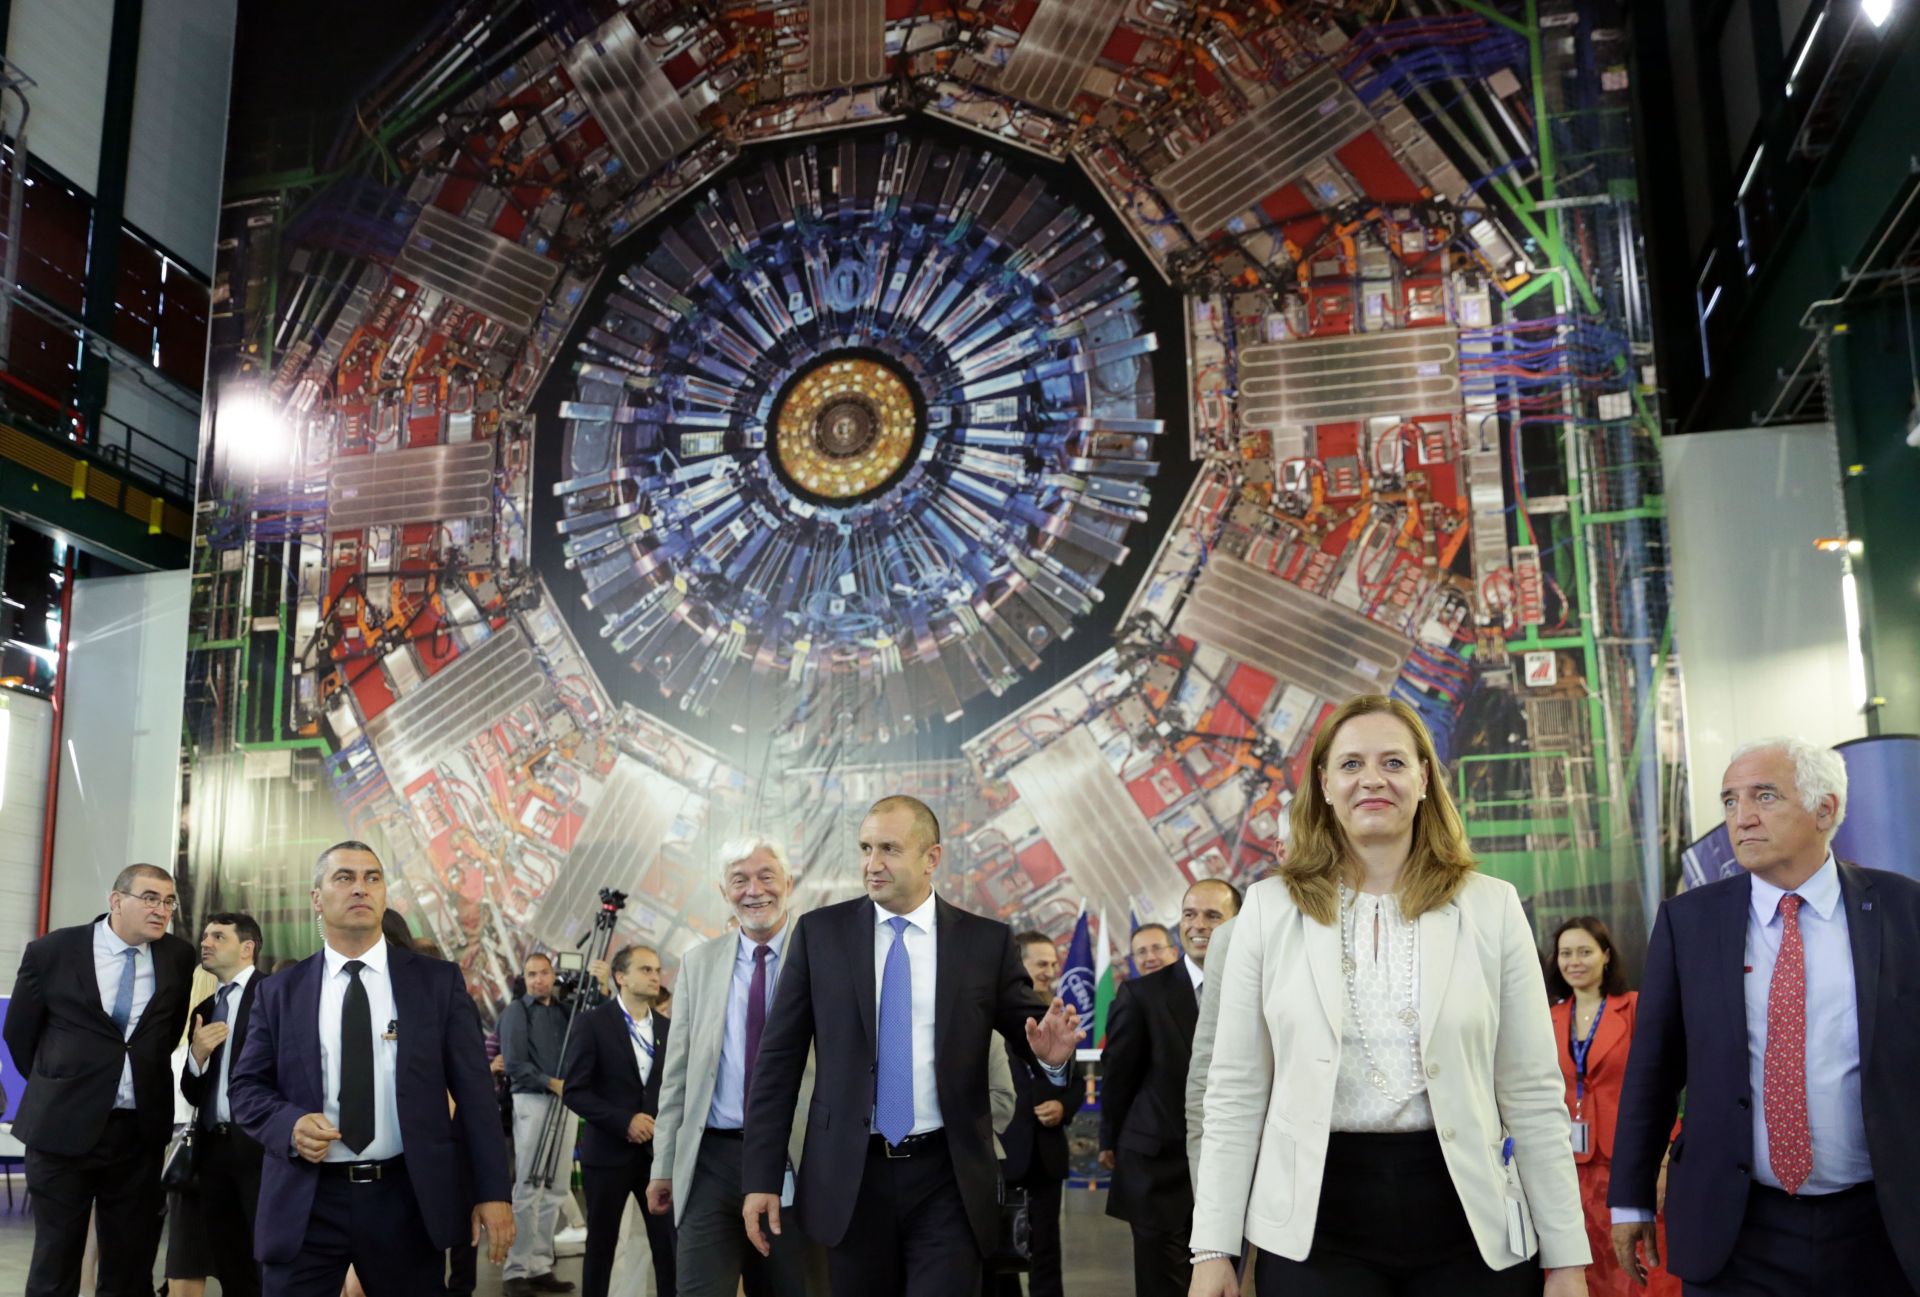 Държавният глава посети тунела, в който е разположен Големият адронен колайдер (LHC) - ускорител